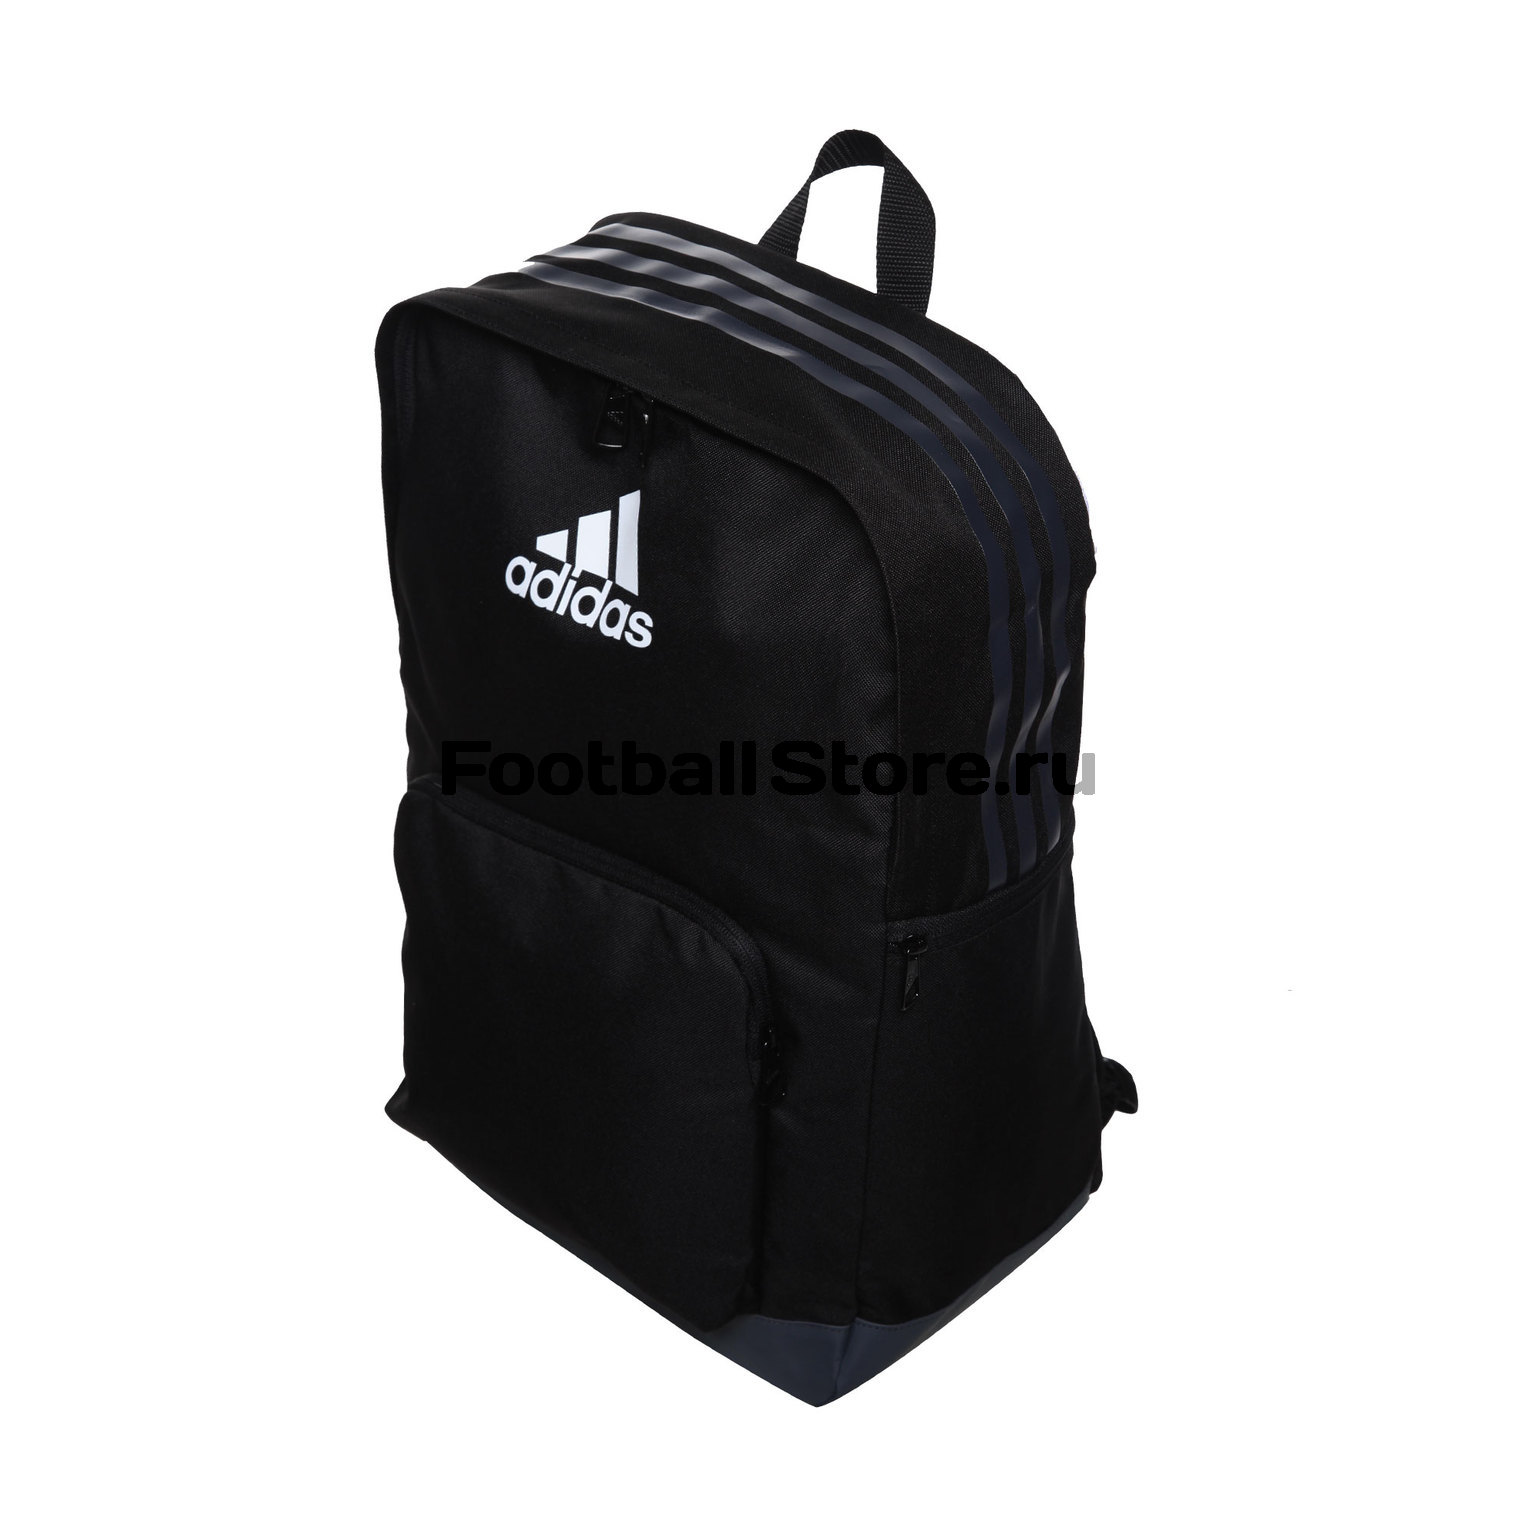 Рюкзак Adidas Tiro BP S98393 — купить интернет магазине цена, фото, доставка